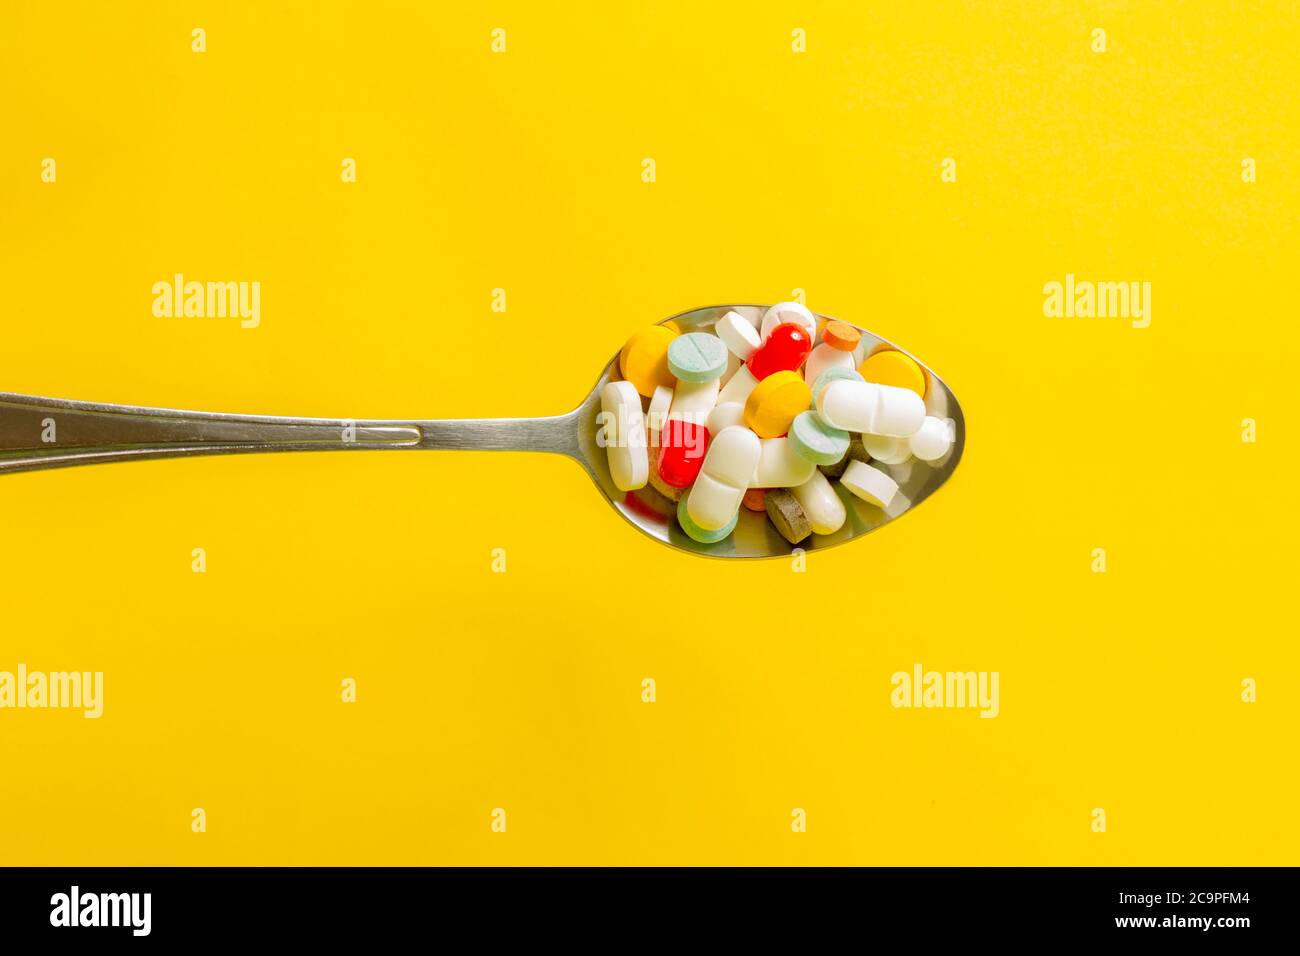 Cuillère pleine de pilules sur fond jaune. Concept d'automédication et d'abus de drogues. Banque D'Images